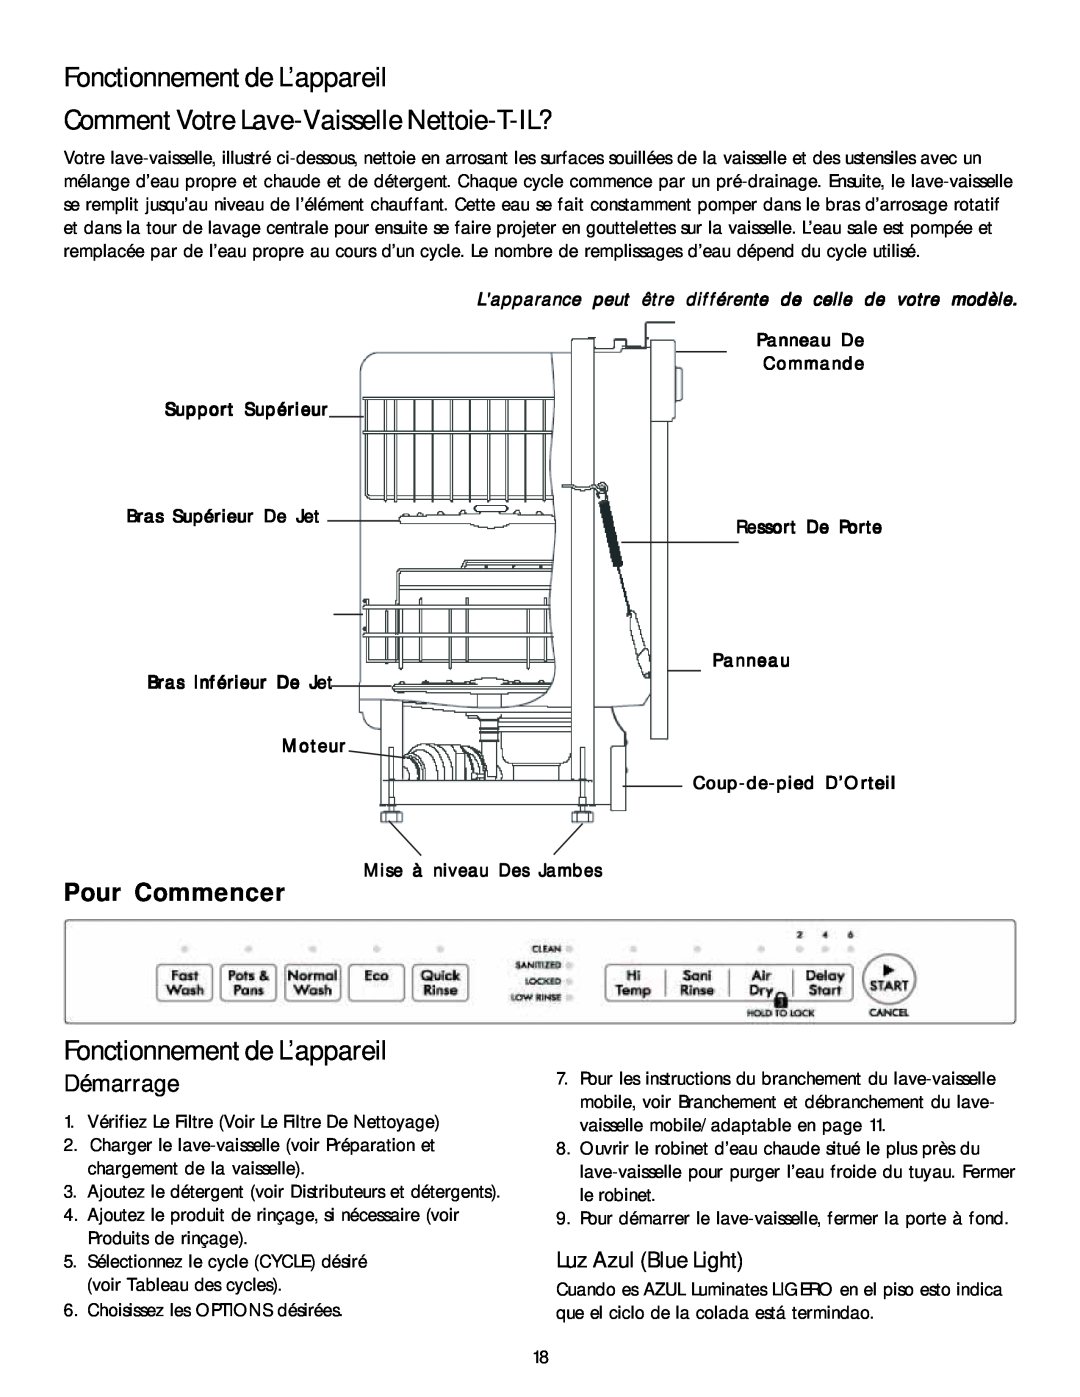 Kenmore 587.1468 manual Fonctionnement de L’appareil, Comment Votre Lave-Vaisselle Nettoie-T-IL?, Pour Commencer, Démarrage 